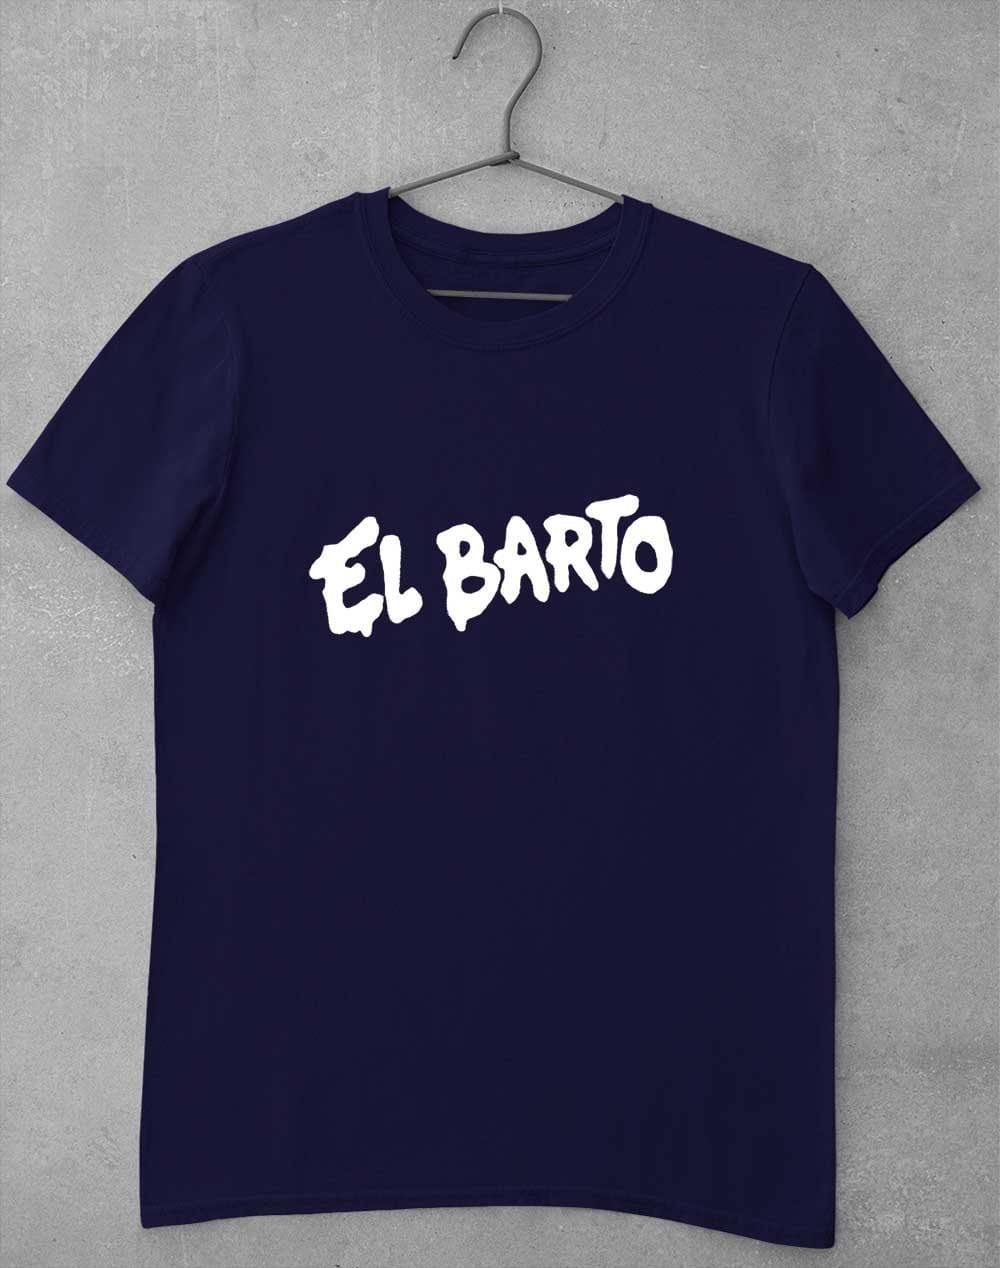 El Barto Tag T-Shirt S / Navy  - Off World Tees